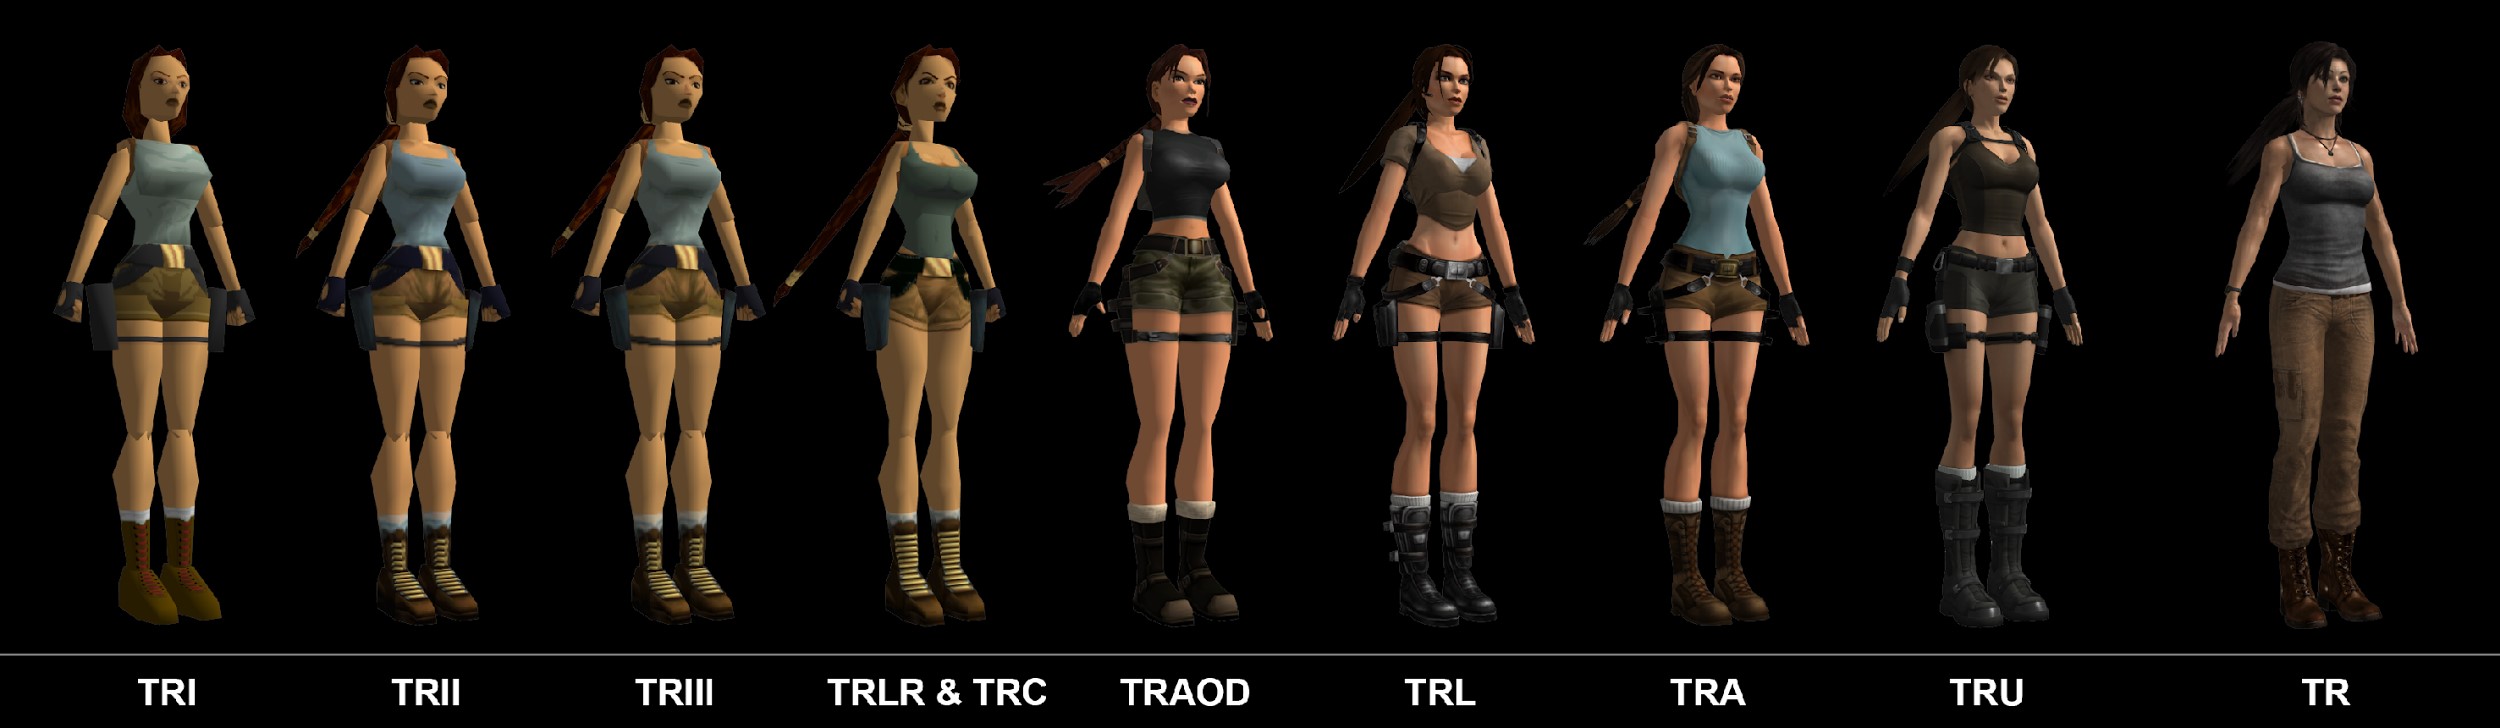 Imagem mostrando a evolução da personagem Lara Croft ao longo dos anos